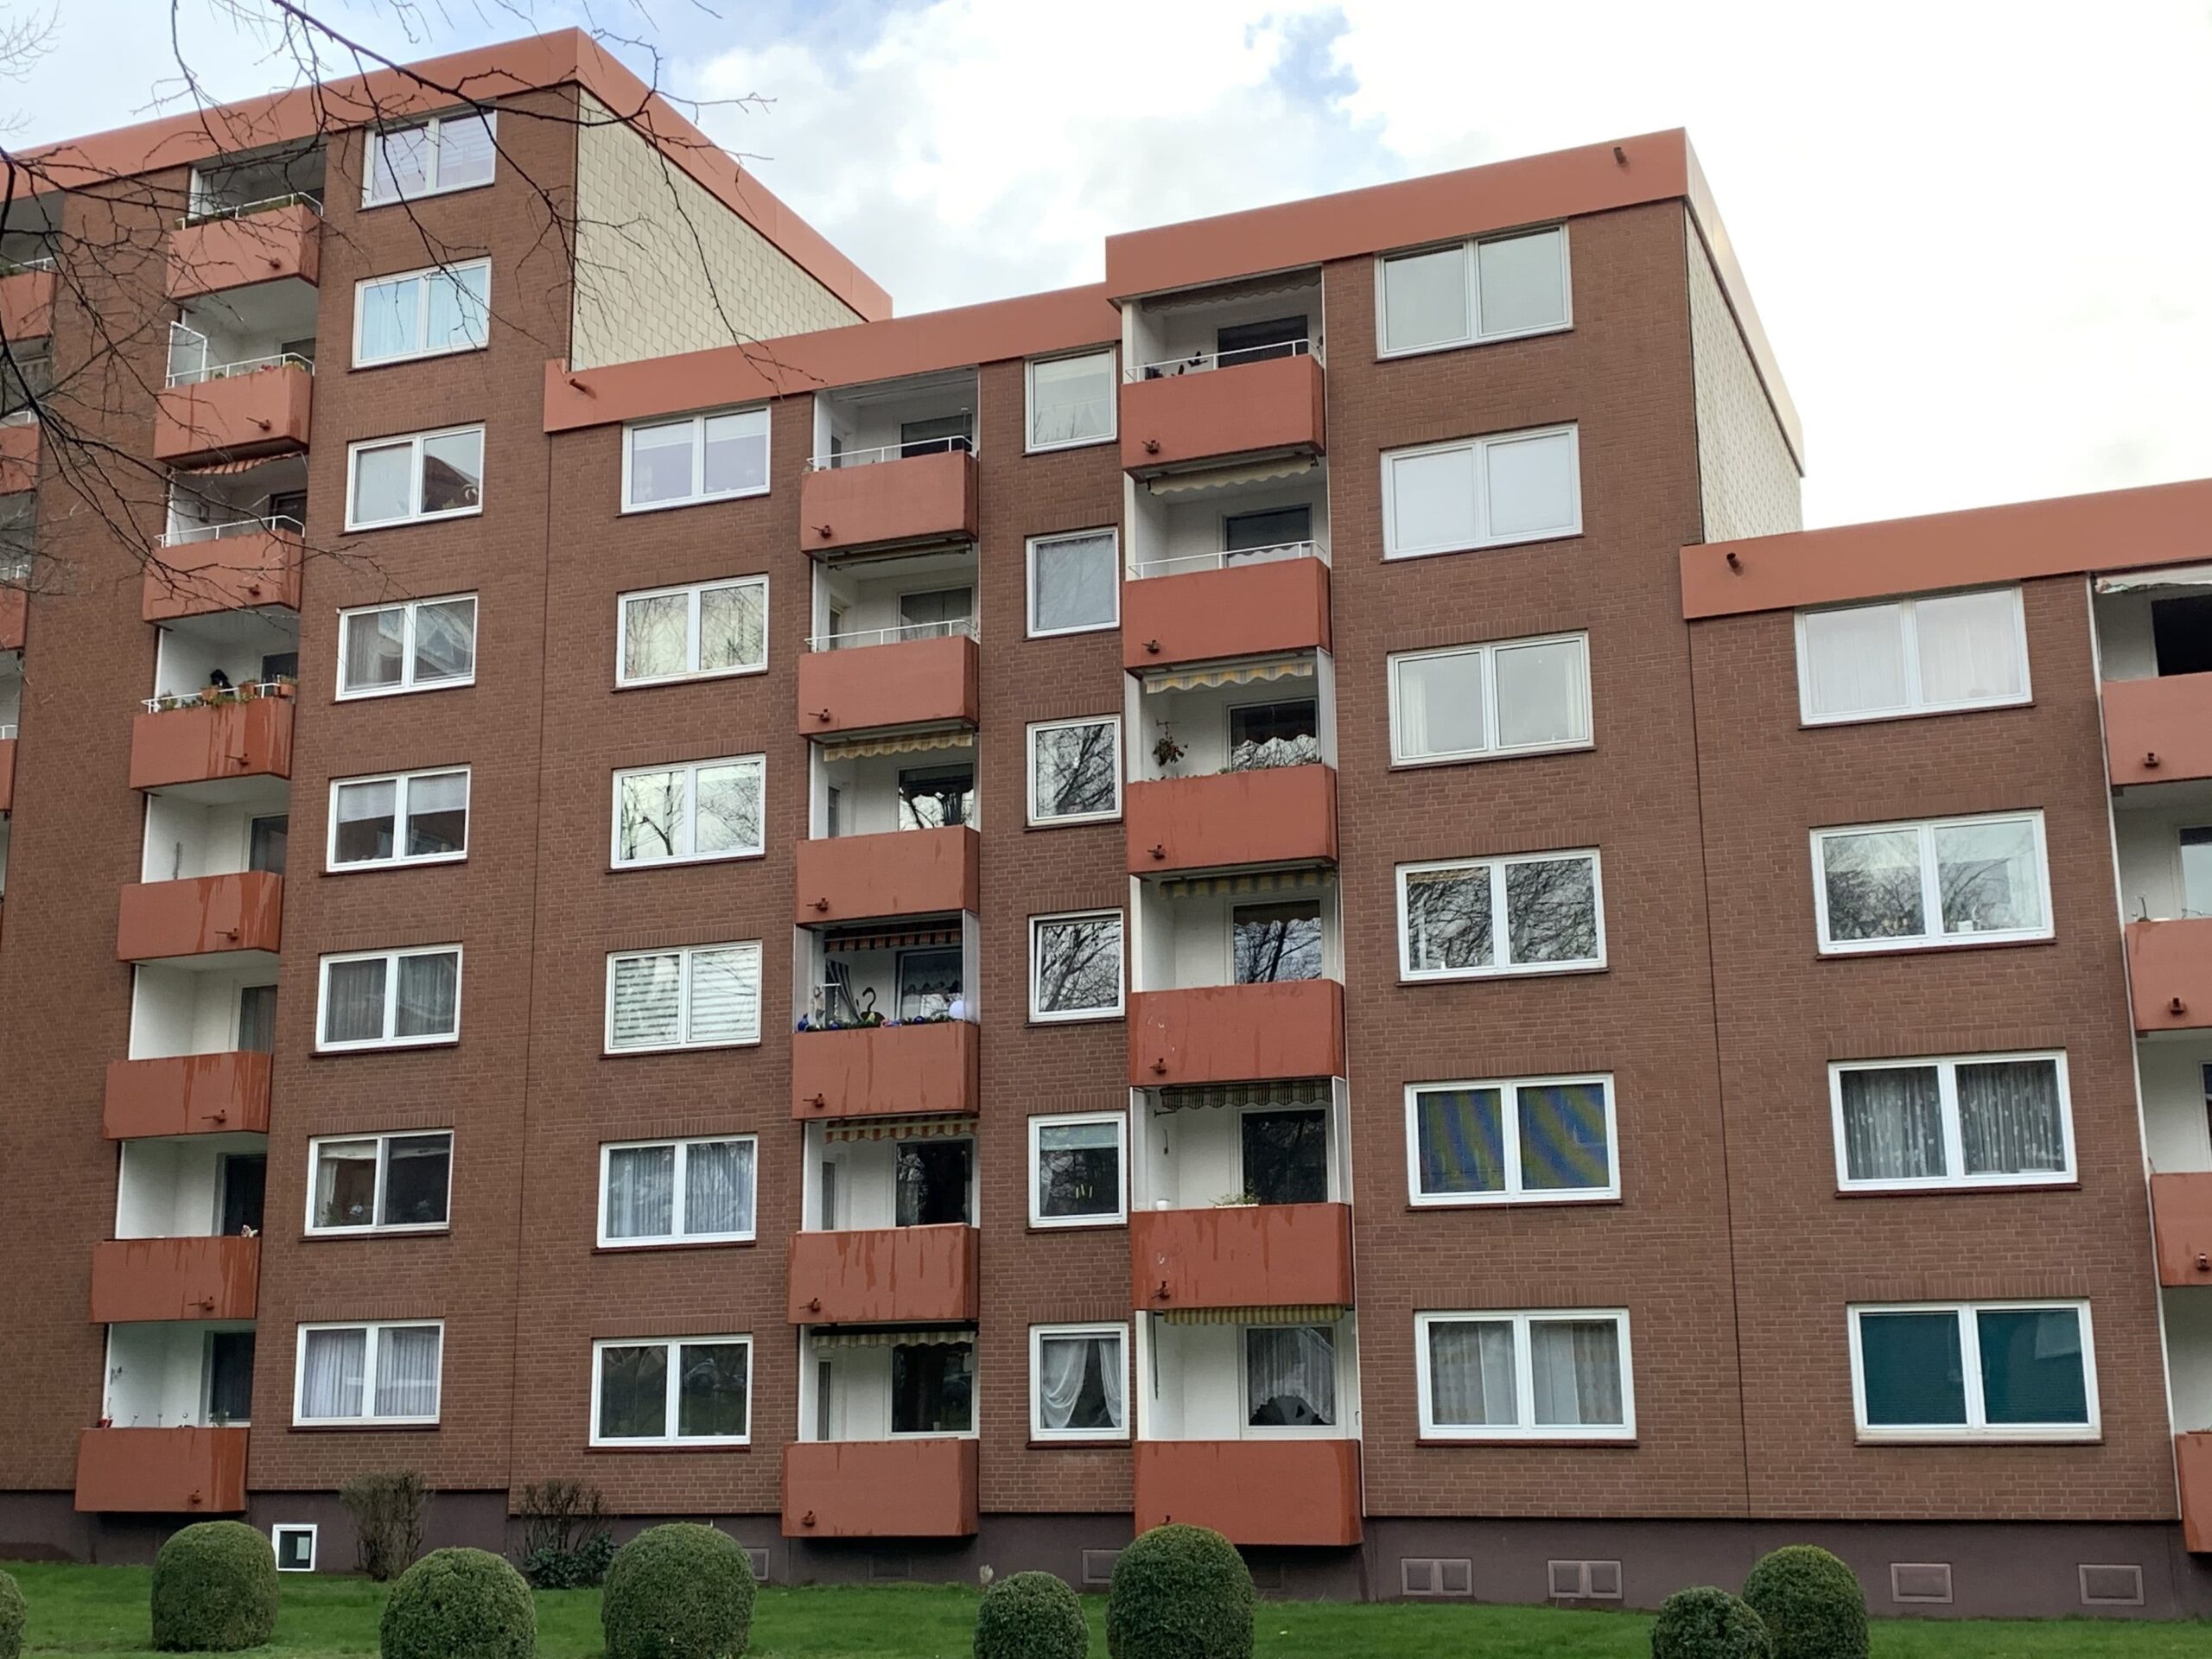 Helle Wohnung mit herrlichem Blick ins Grüne, 30455 Hannover, Etagenwohnung